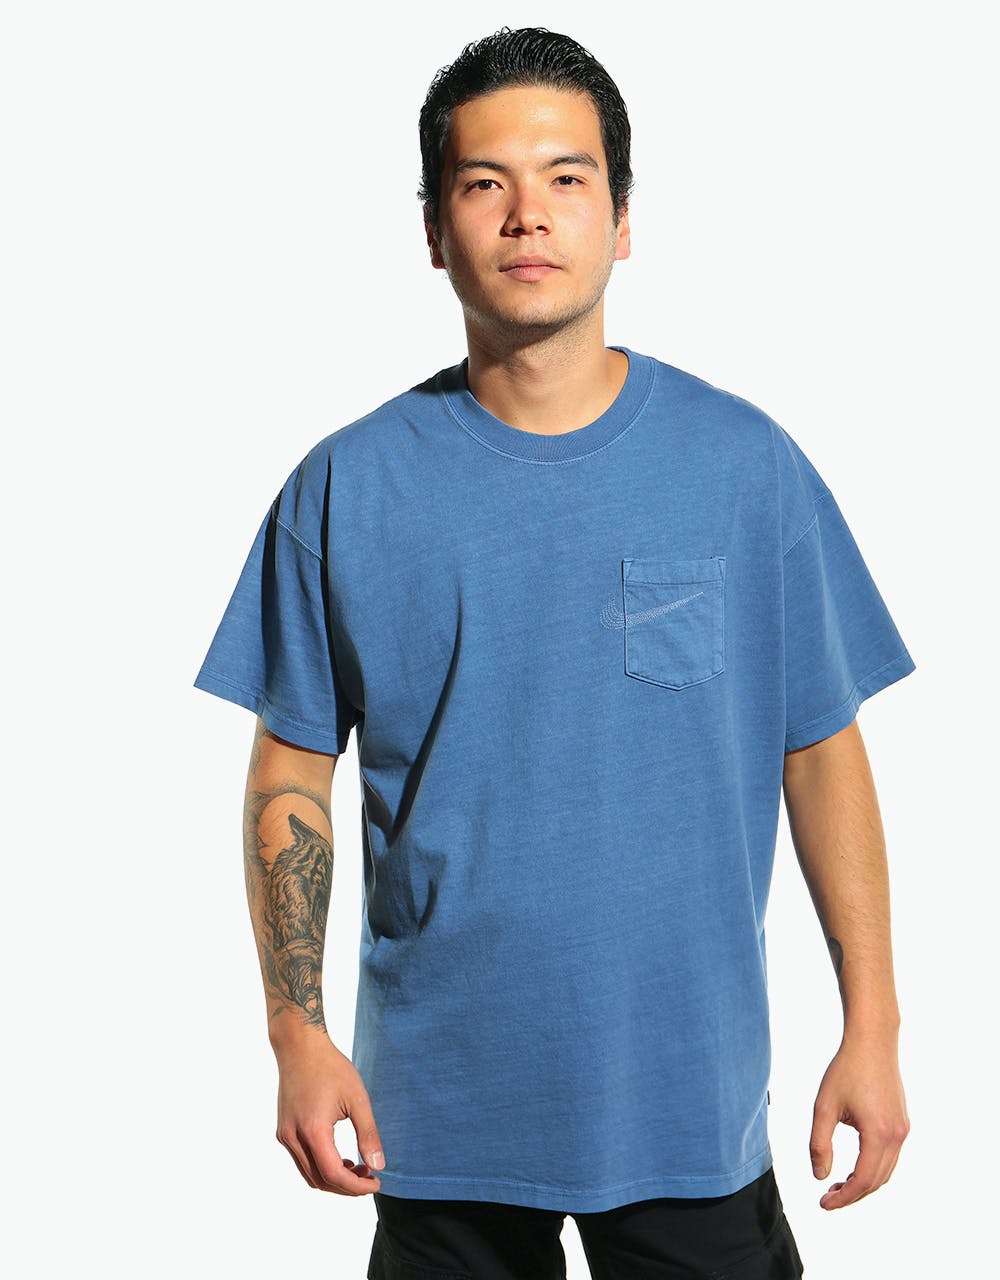 Nike SB Pocket Overdye T-Shirt - Mystic Navy/Birch Heather/White